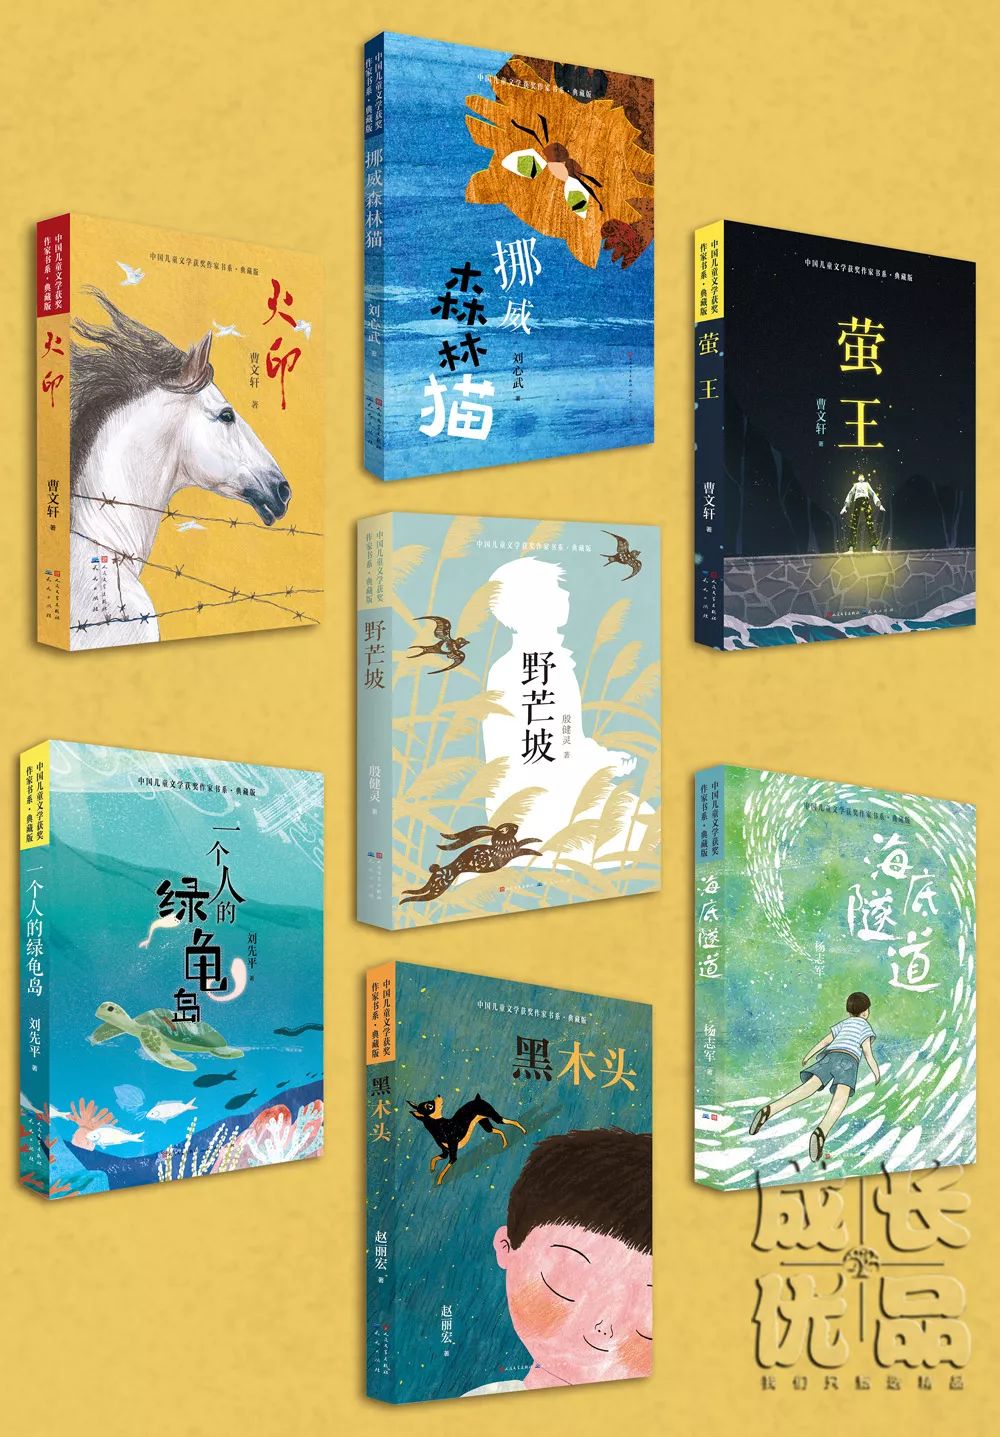 推荐百种优秀出版物殷健灵老师的《野芒坡》——中国童书榜最佳童书